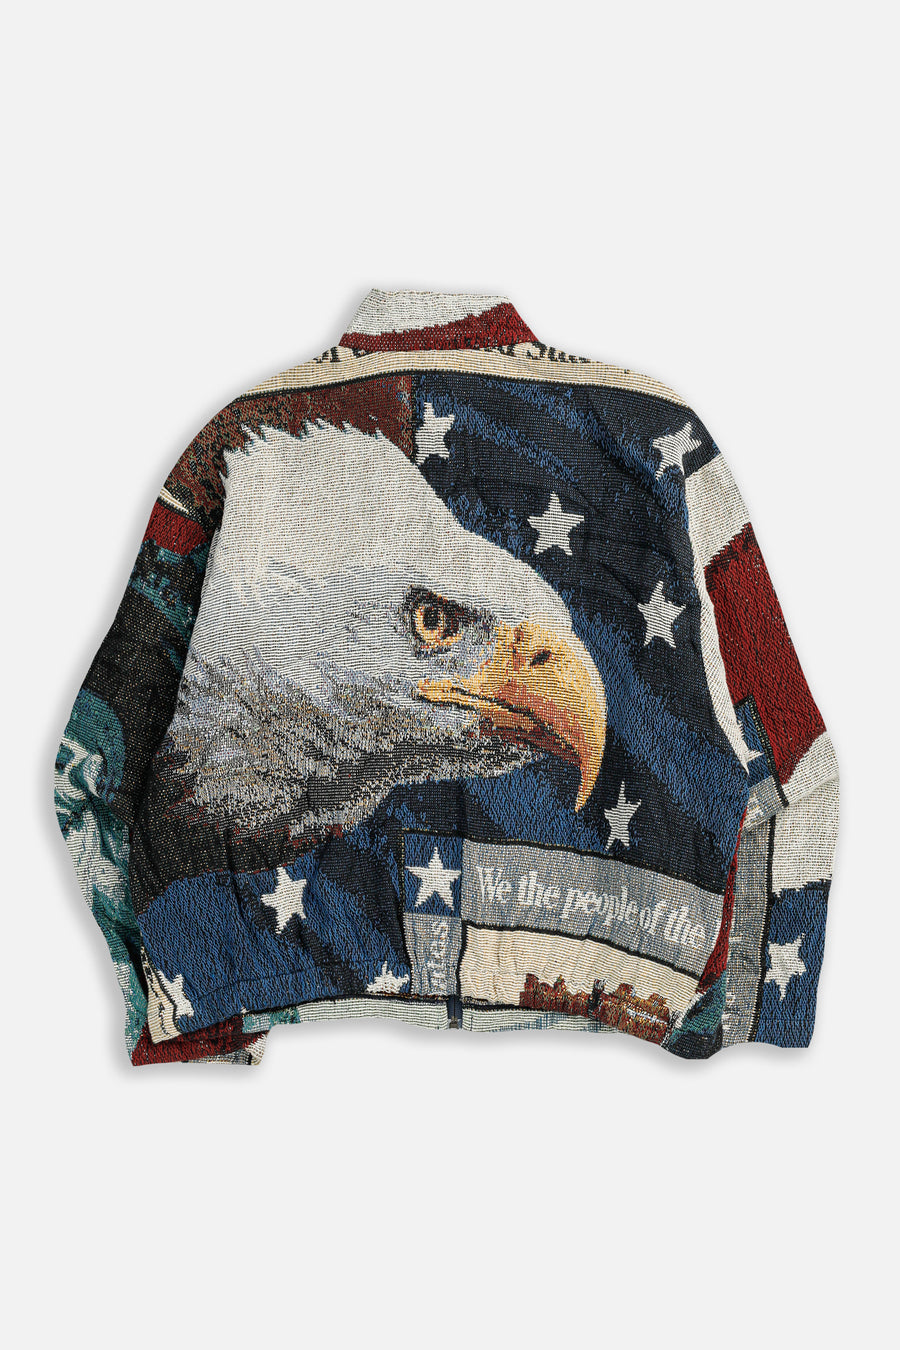 Vintage USA Jacket - M